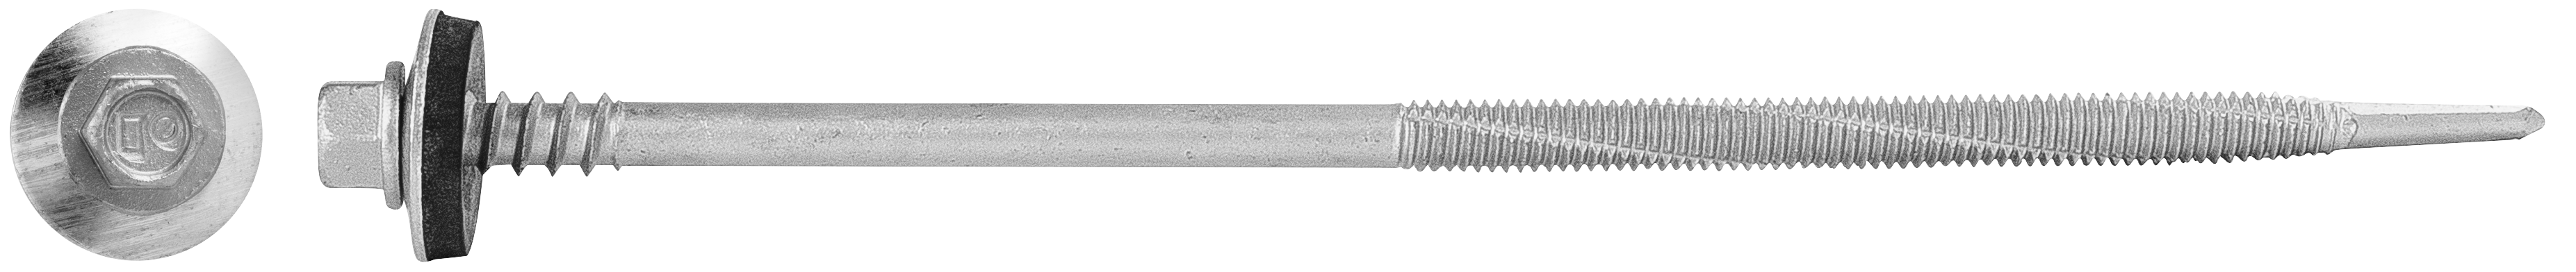 R-ONR-55/63 Wkręty samowiercące do płyt warstwowych z powłoką zinc-flake do 12mm